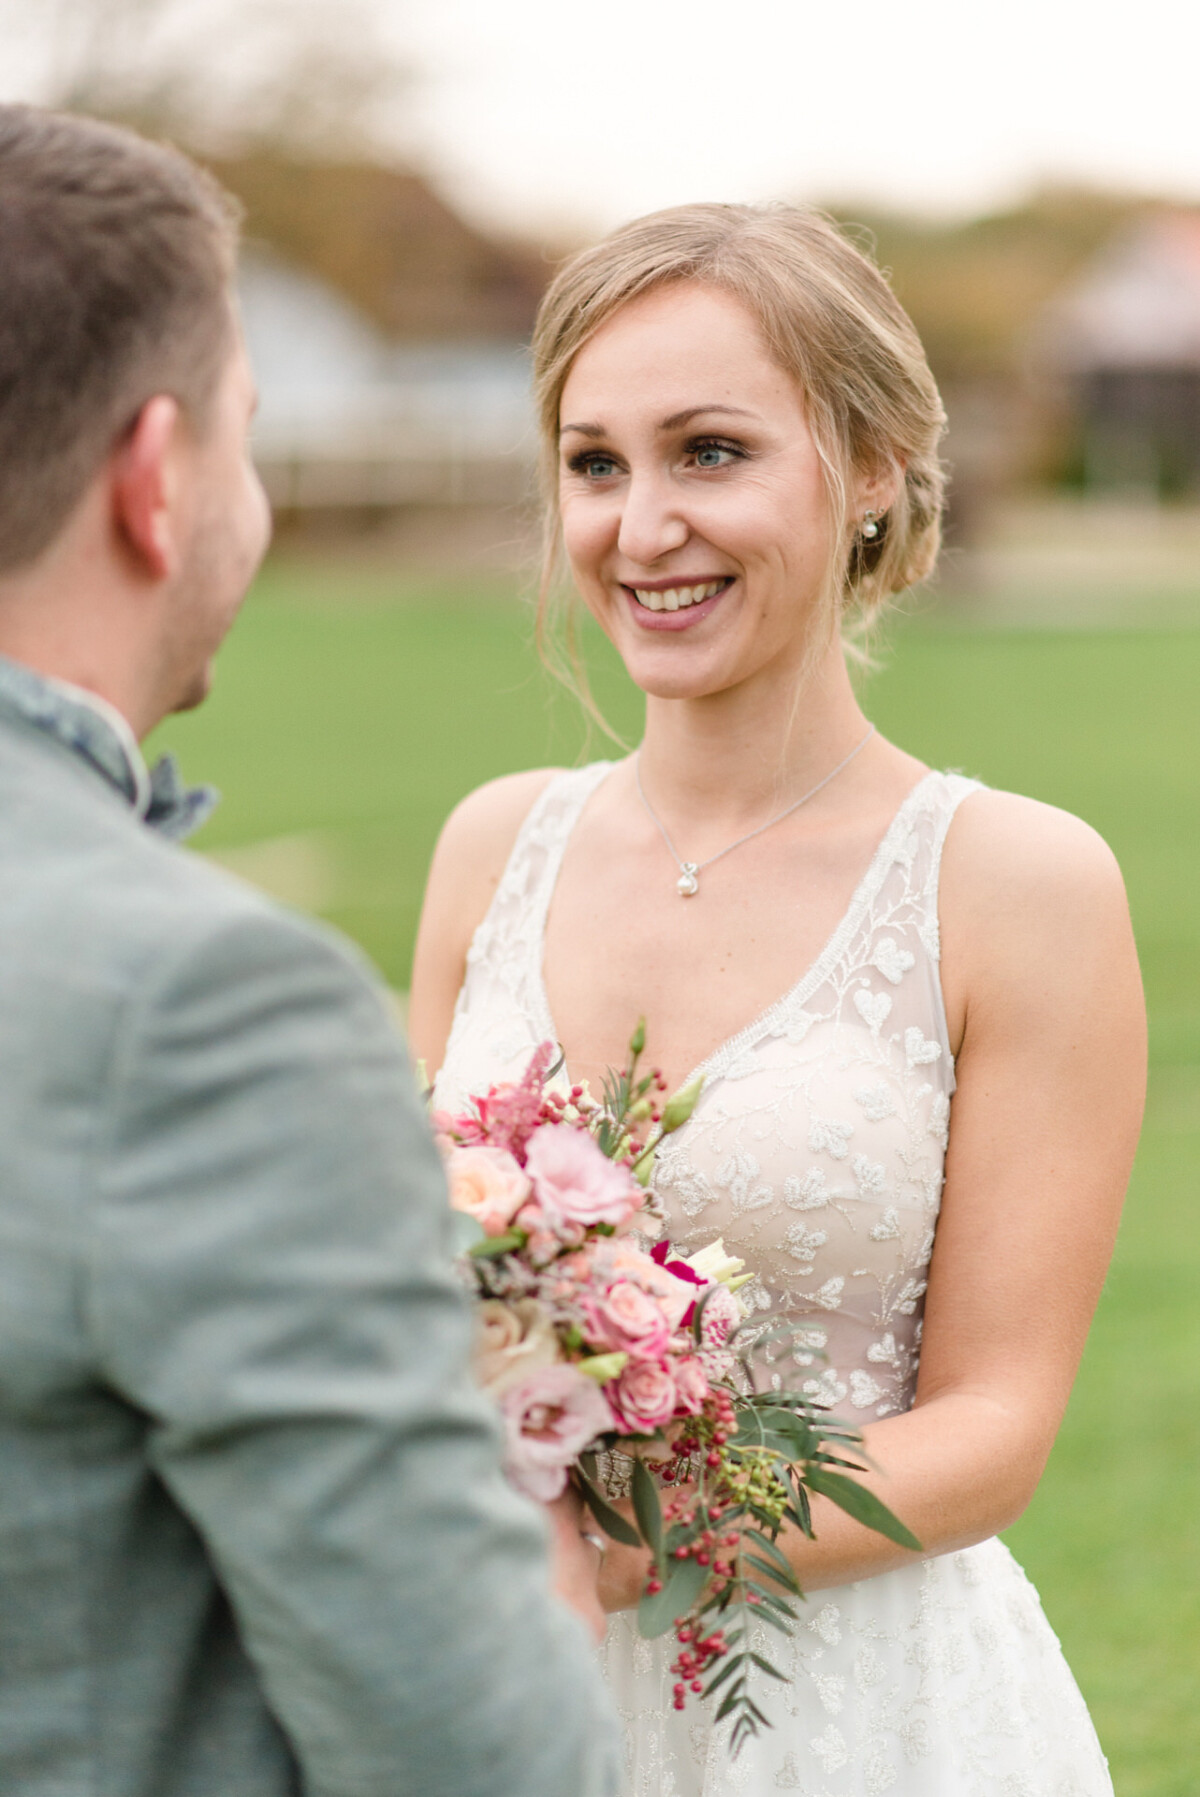 Eine Braut und ein Bräutigam lächeln einander auf einem Feld an.